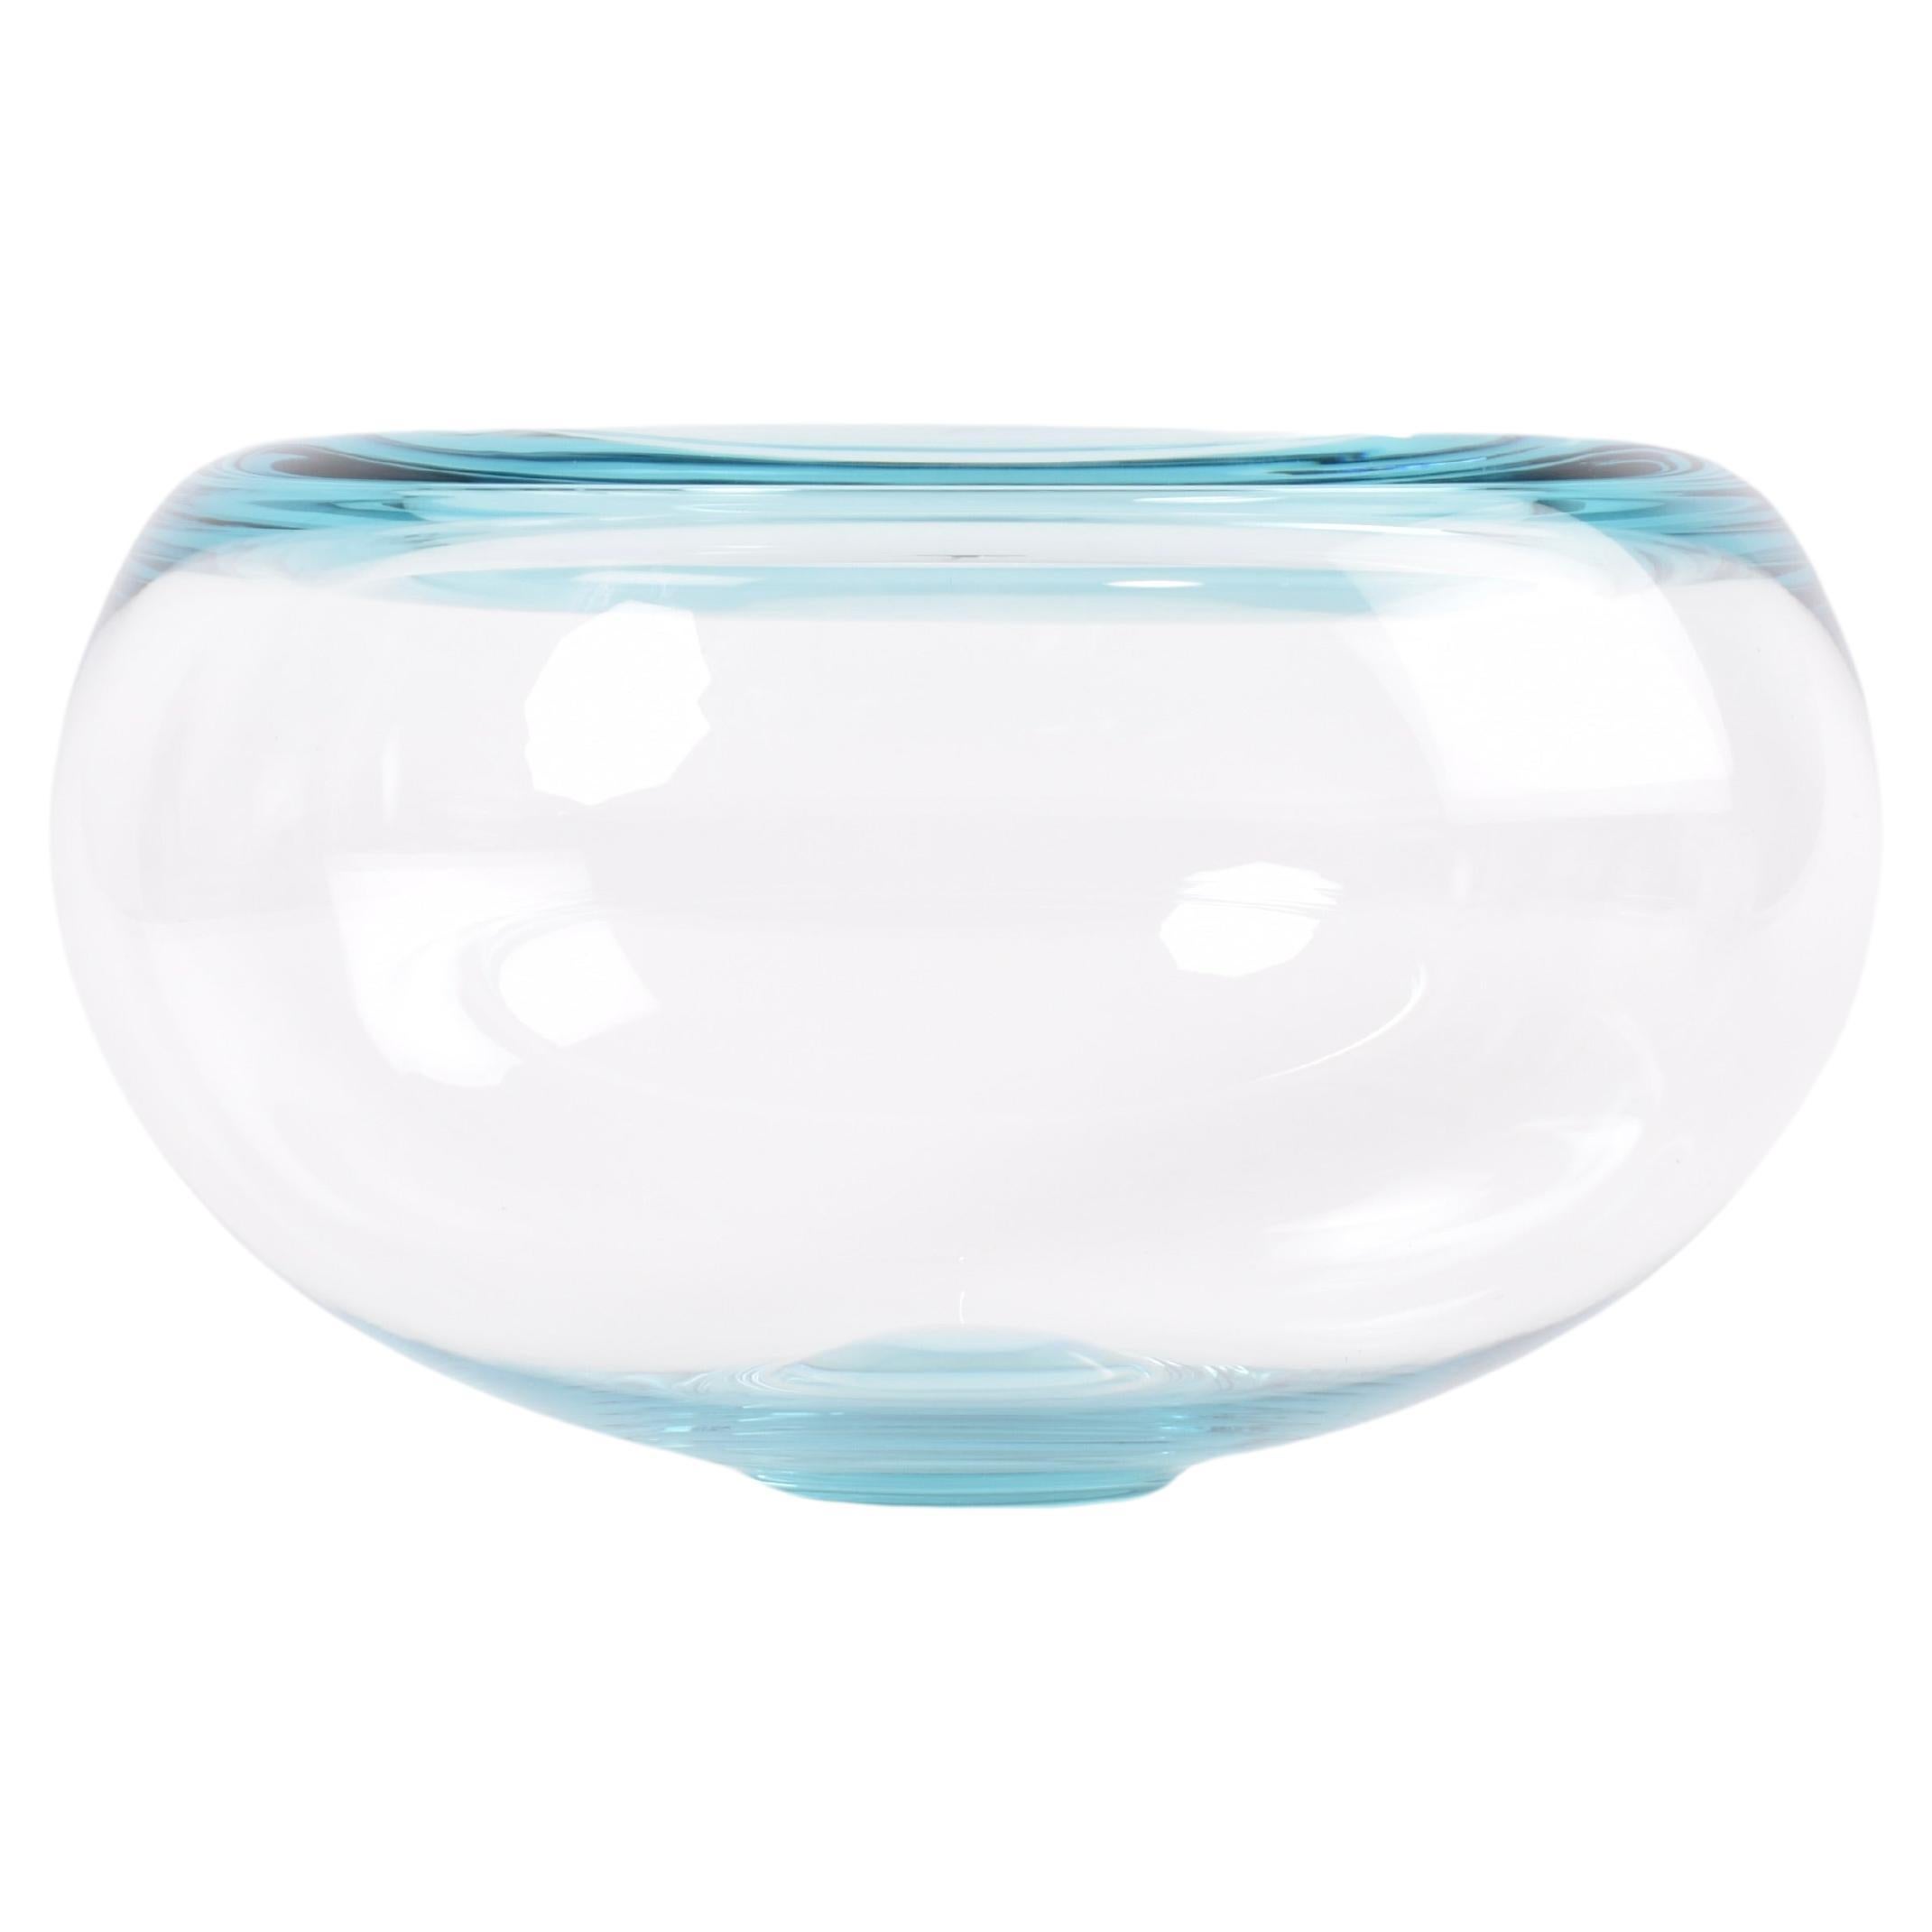 Danish Per Lütken for Holmegaard "Provence" Glass Bowl Aqua Blue, Modern Design For Sale